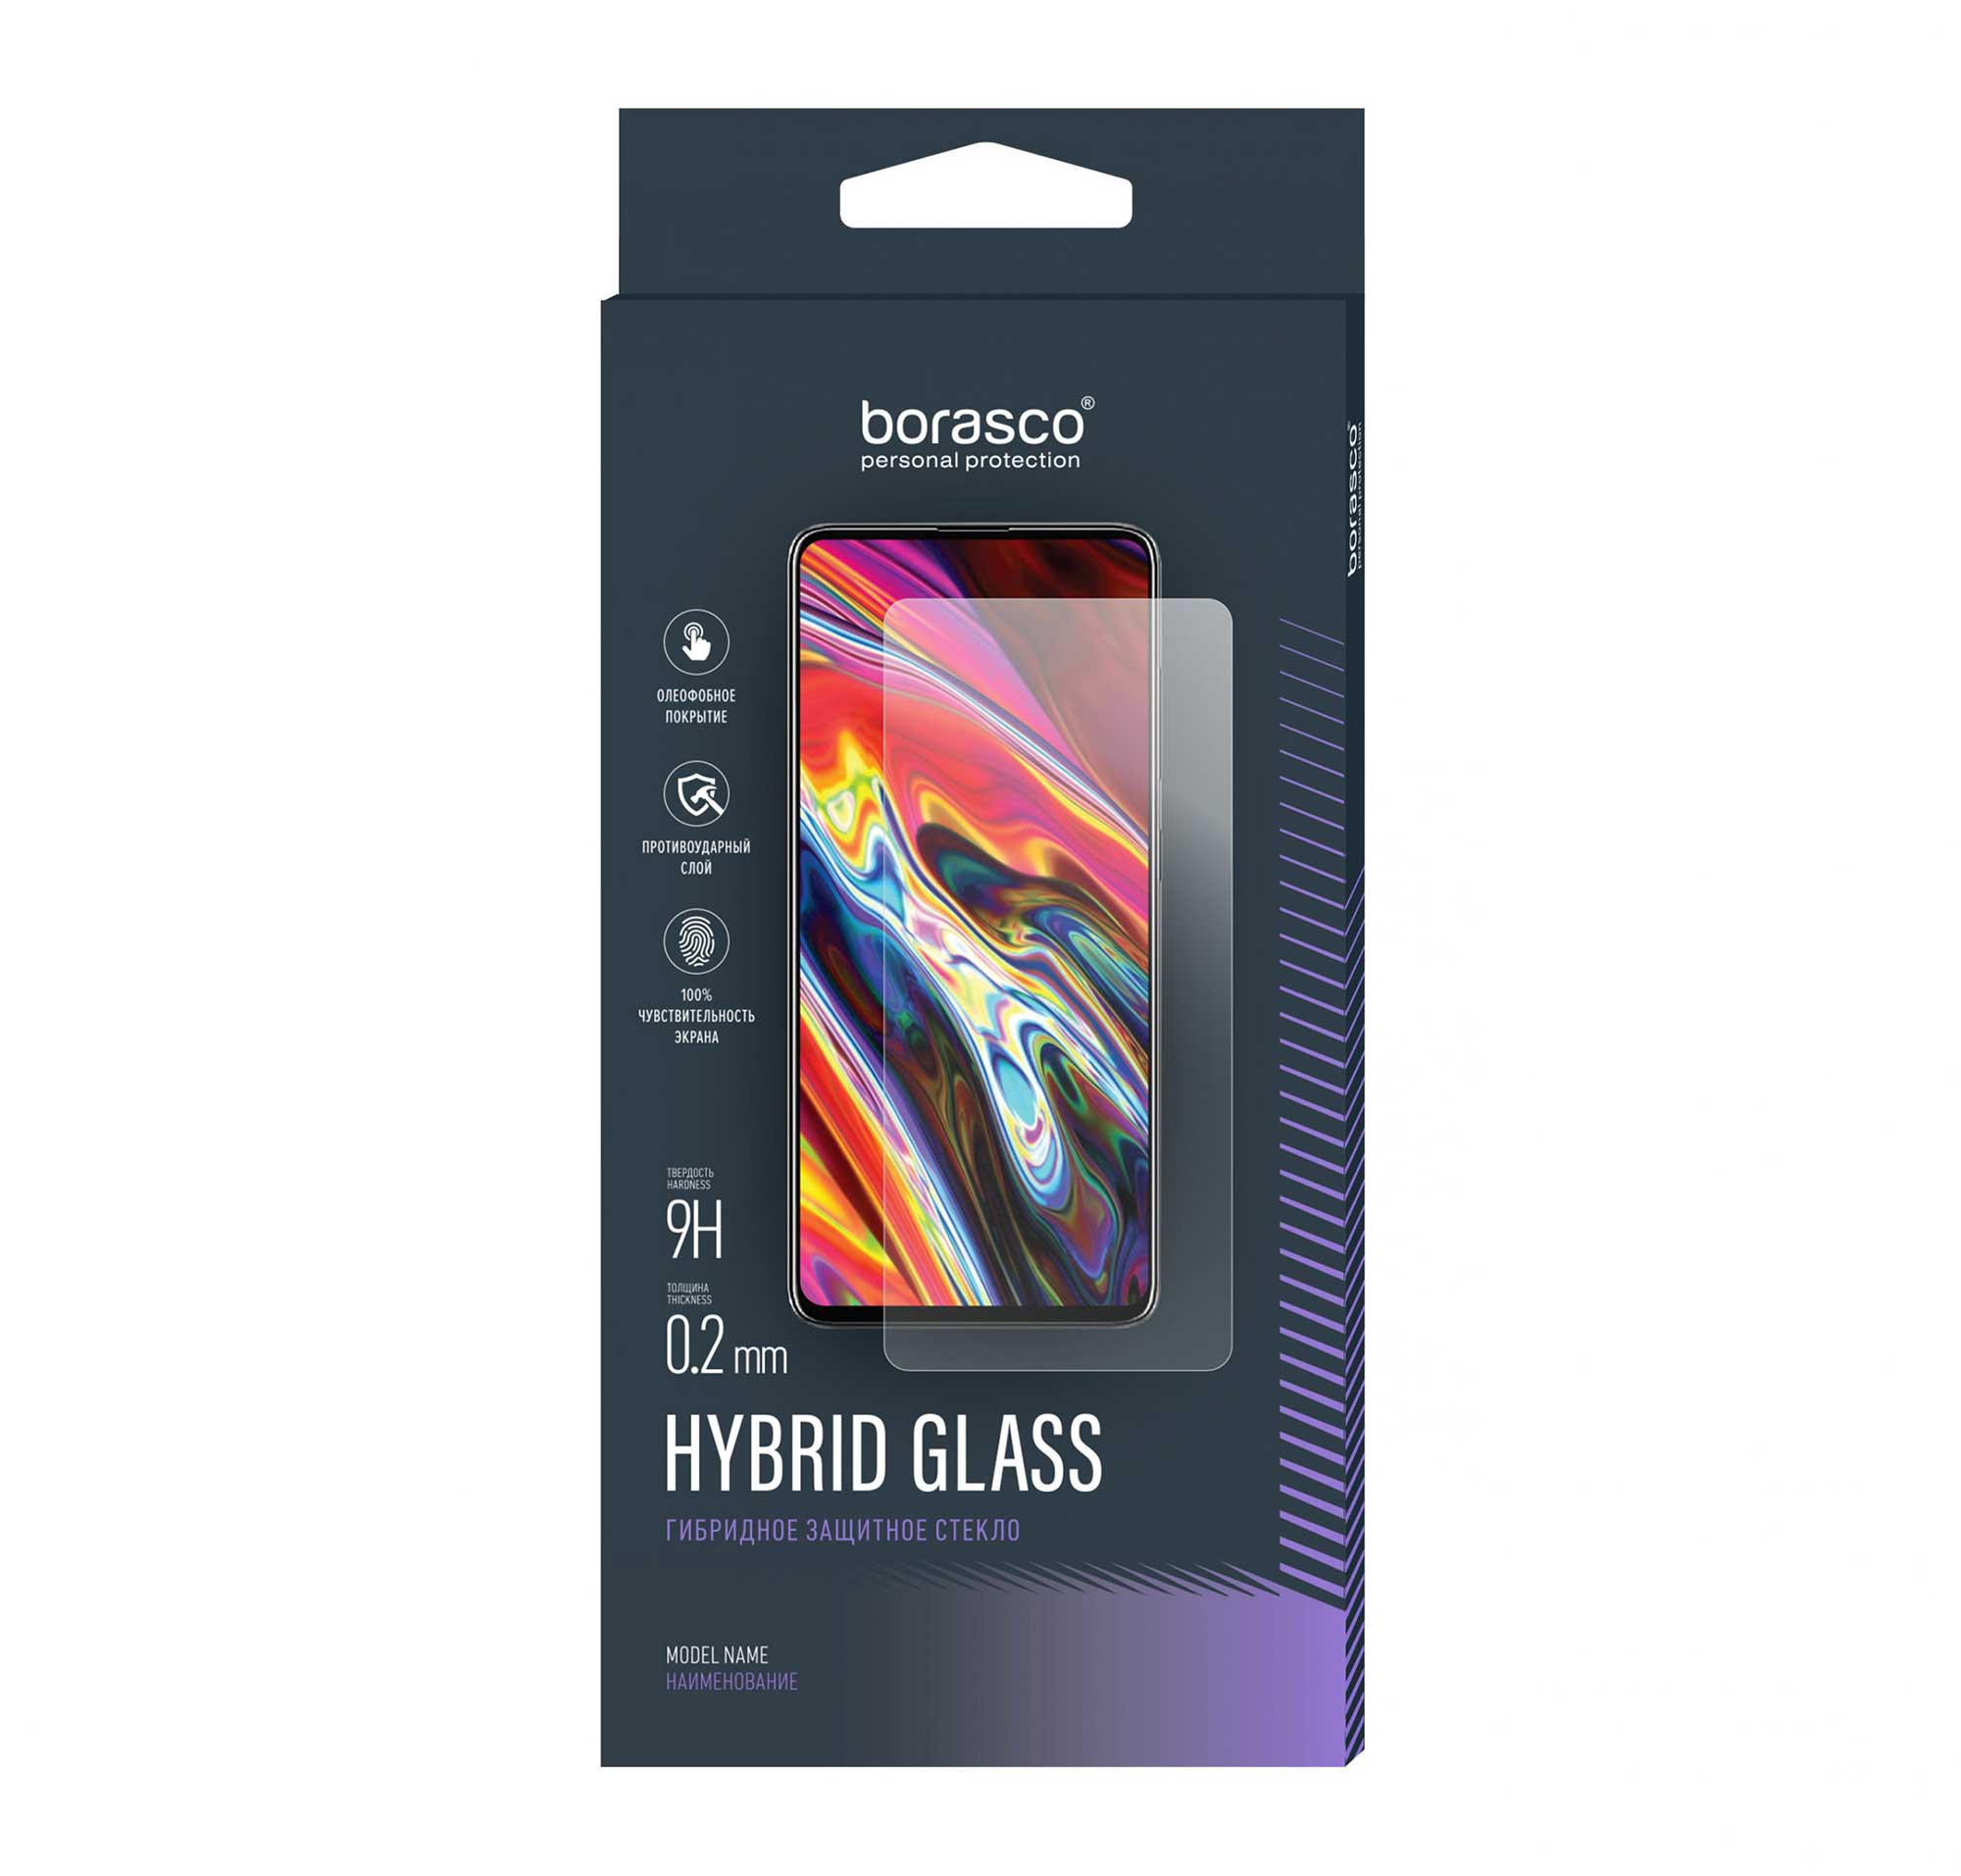 Защитное стекло BoraSCO Hybrid Glass для Google Pixel 4a для google pixel 4a 5g стекло для pixel 4a 5g стекло для объектива камеры защитная пленка для экрана телефона для google pixel 4a 5g закаленное стекло